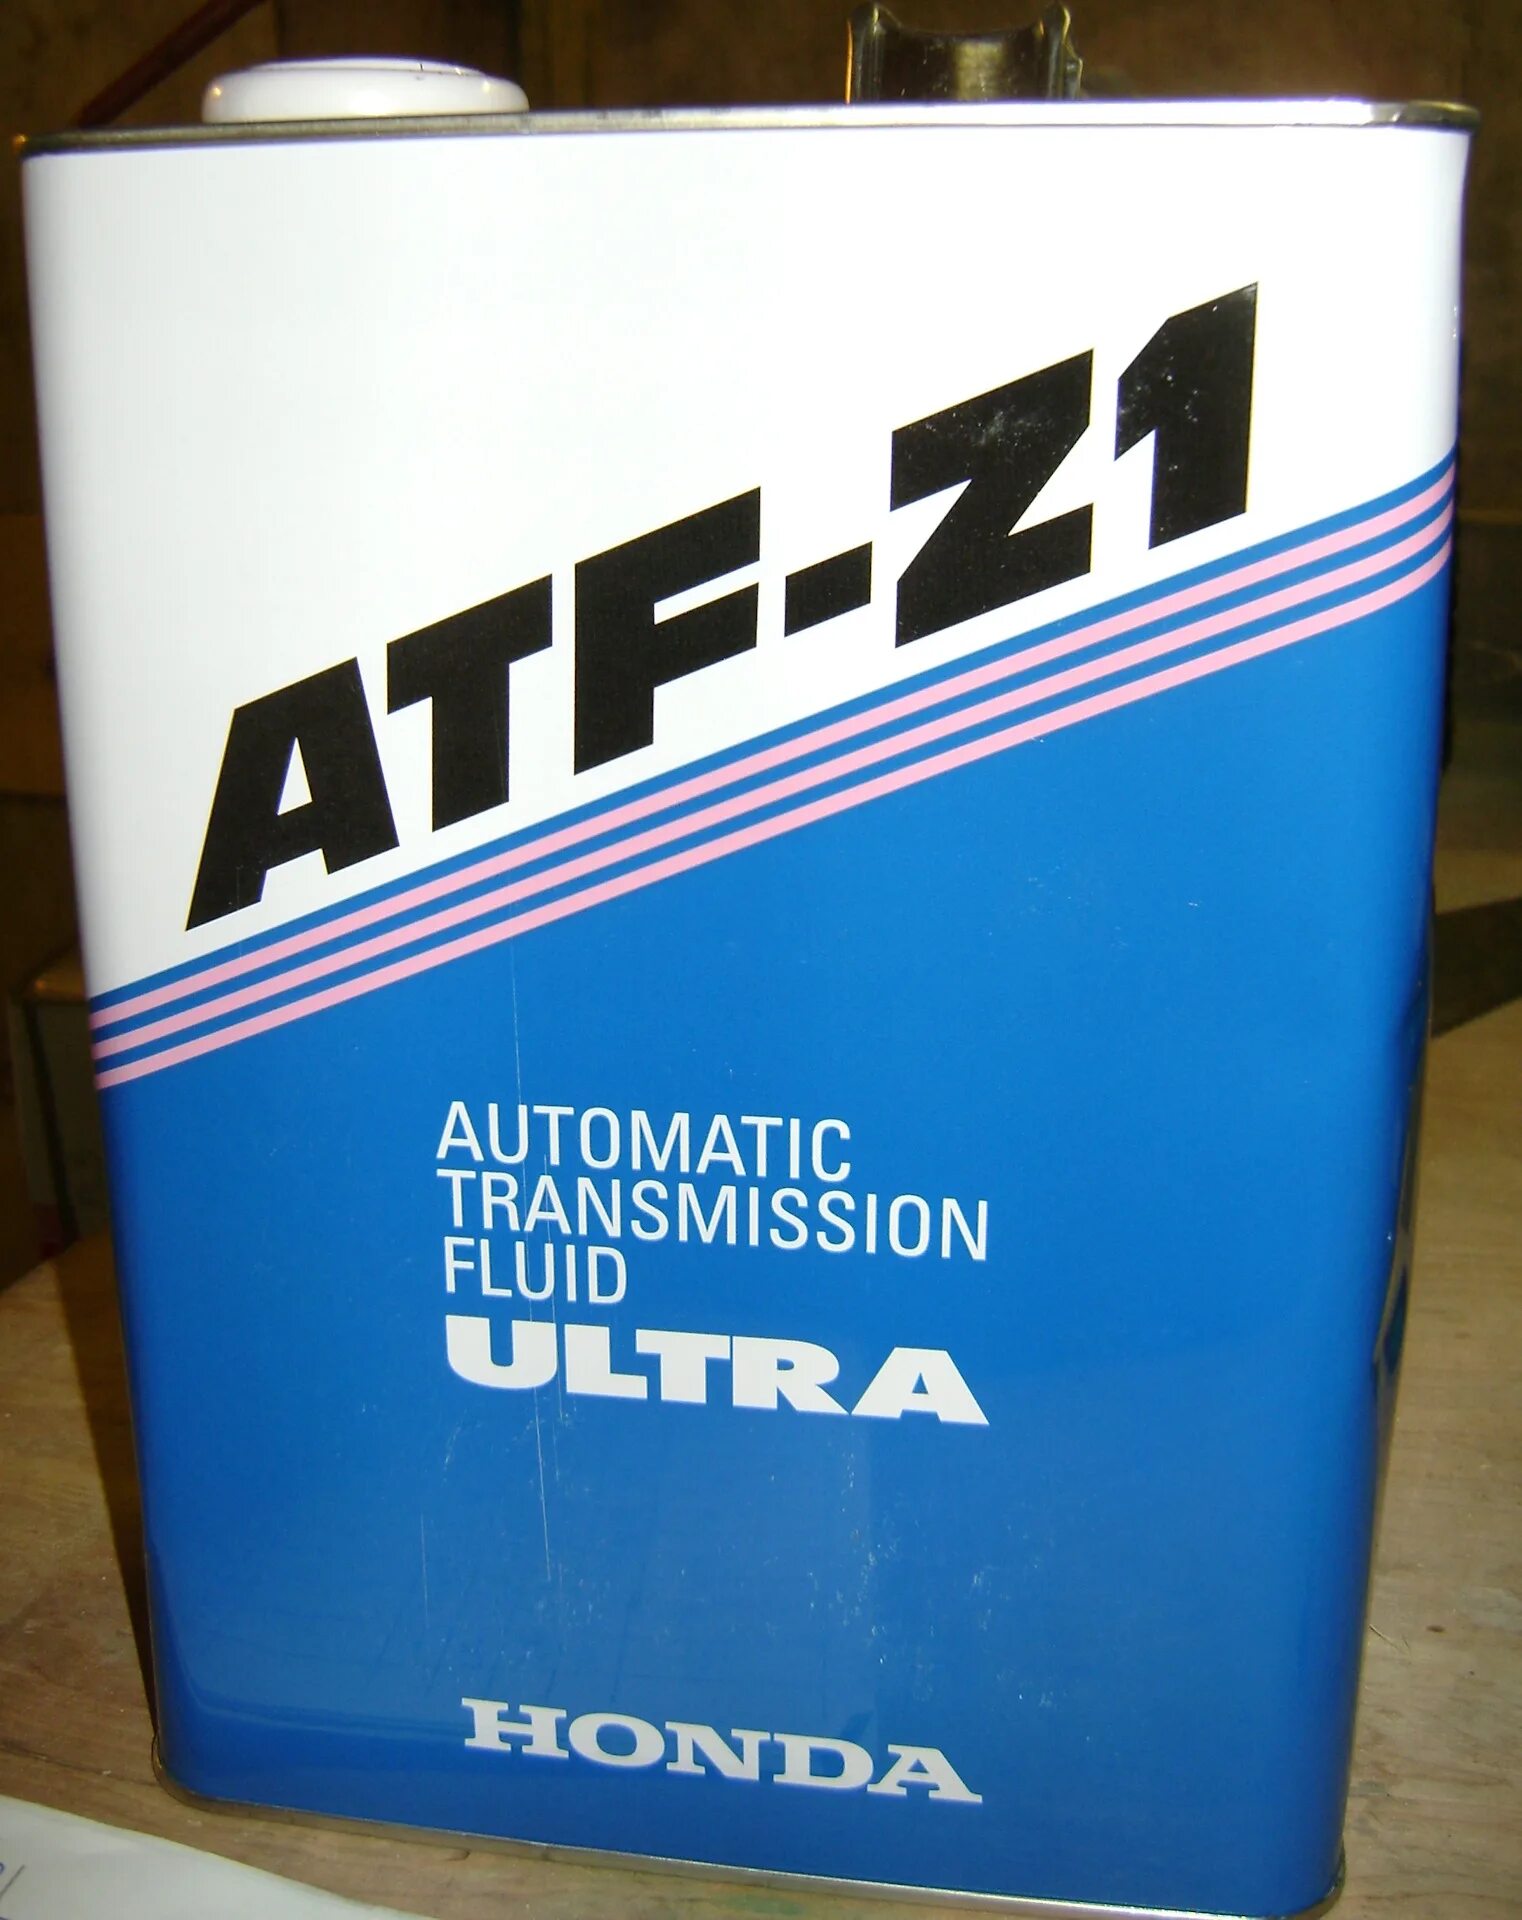 Масло z 1. Ultra ATF-z1 4л. Honda Ultra ATF-z1. Honda ATF Z-1. Трансмиссионное масло Хонда z1 для АКПП.